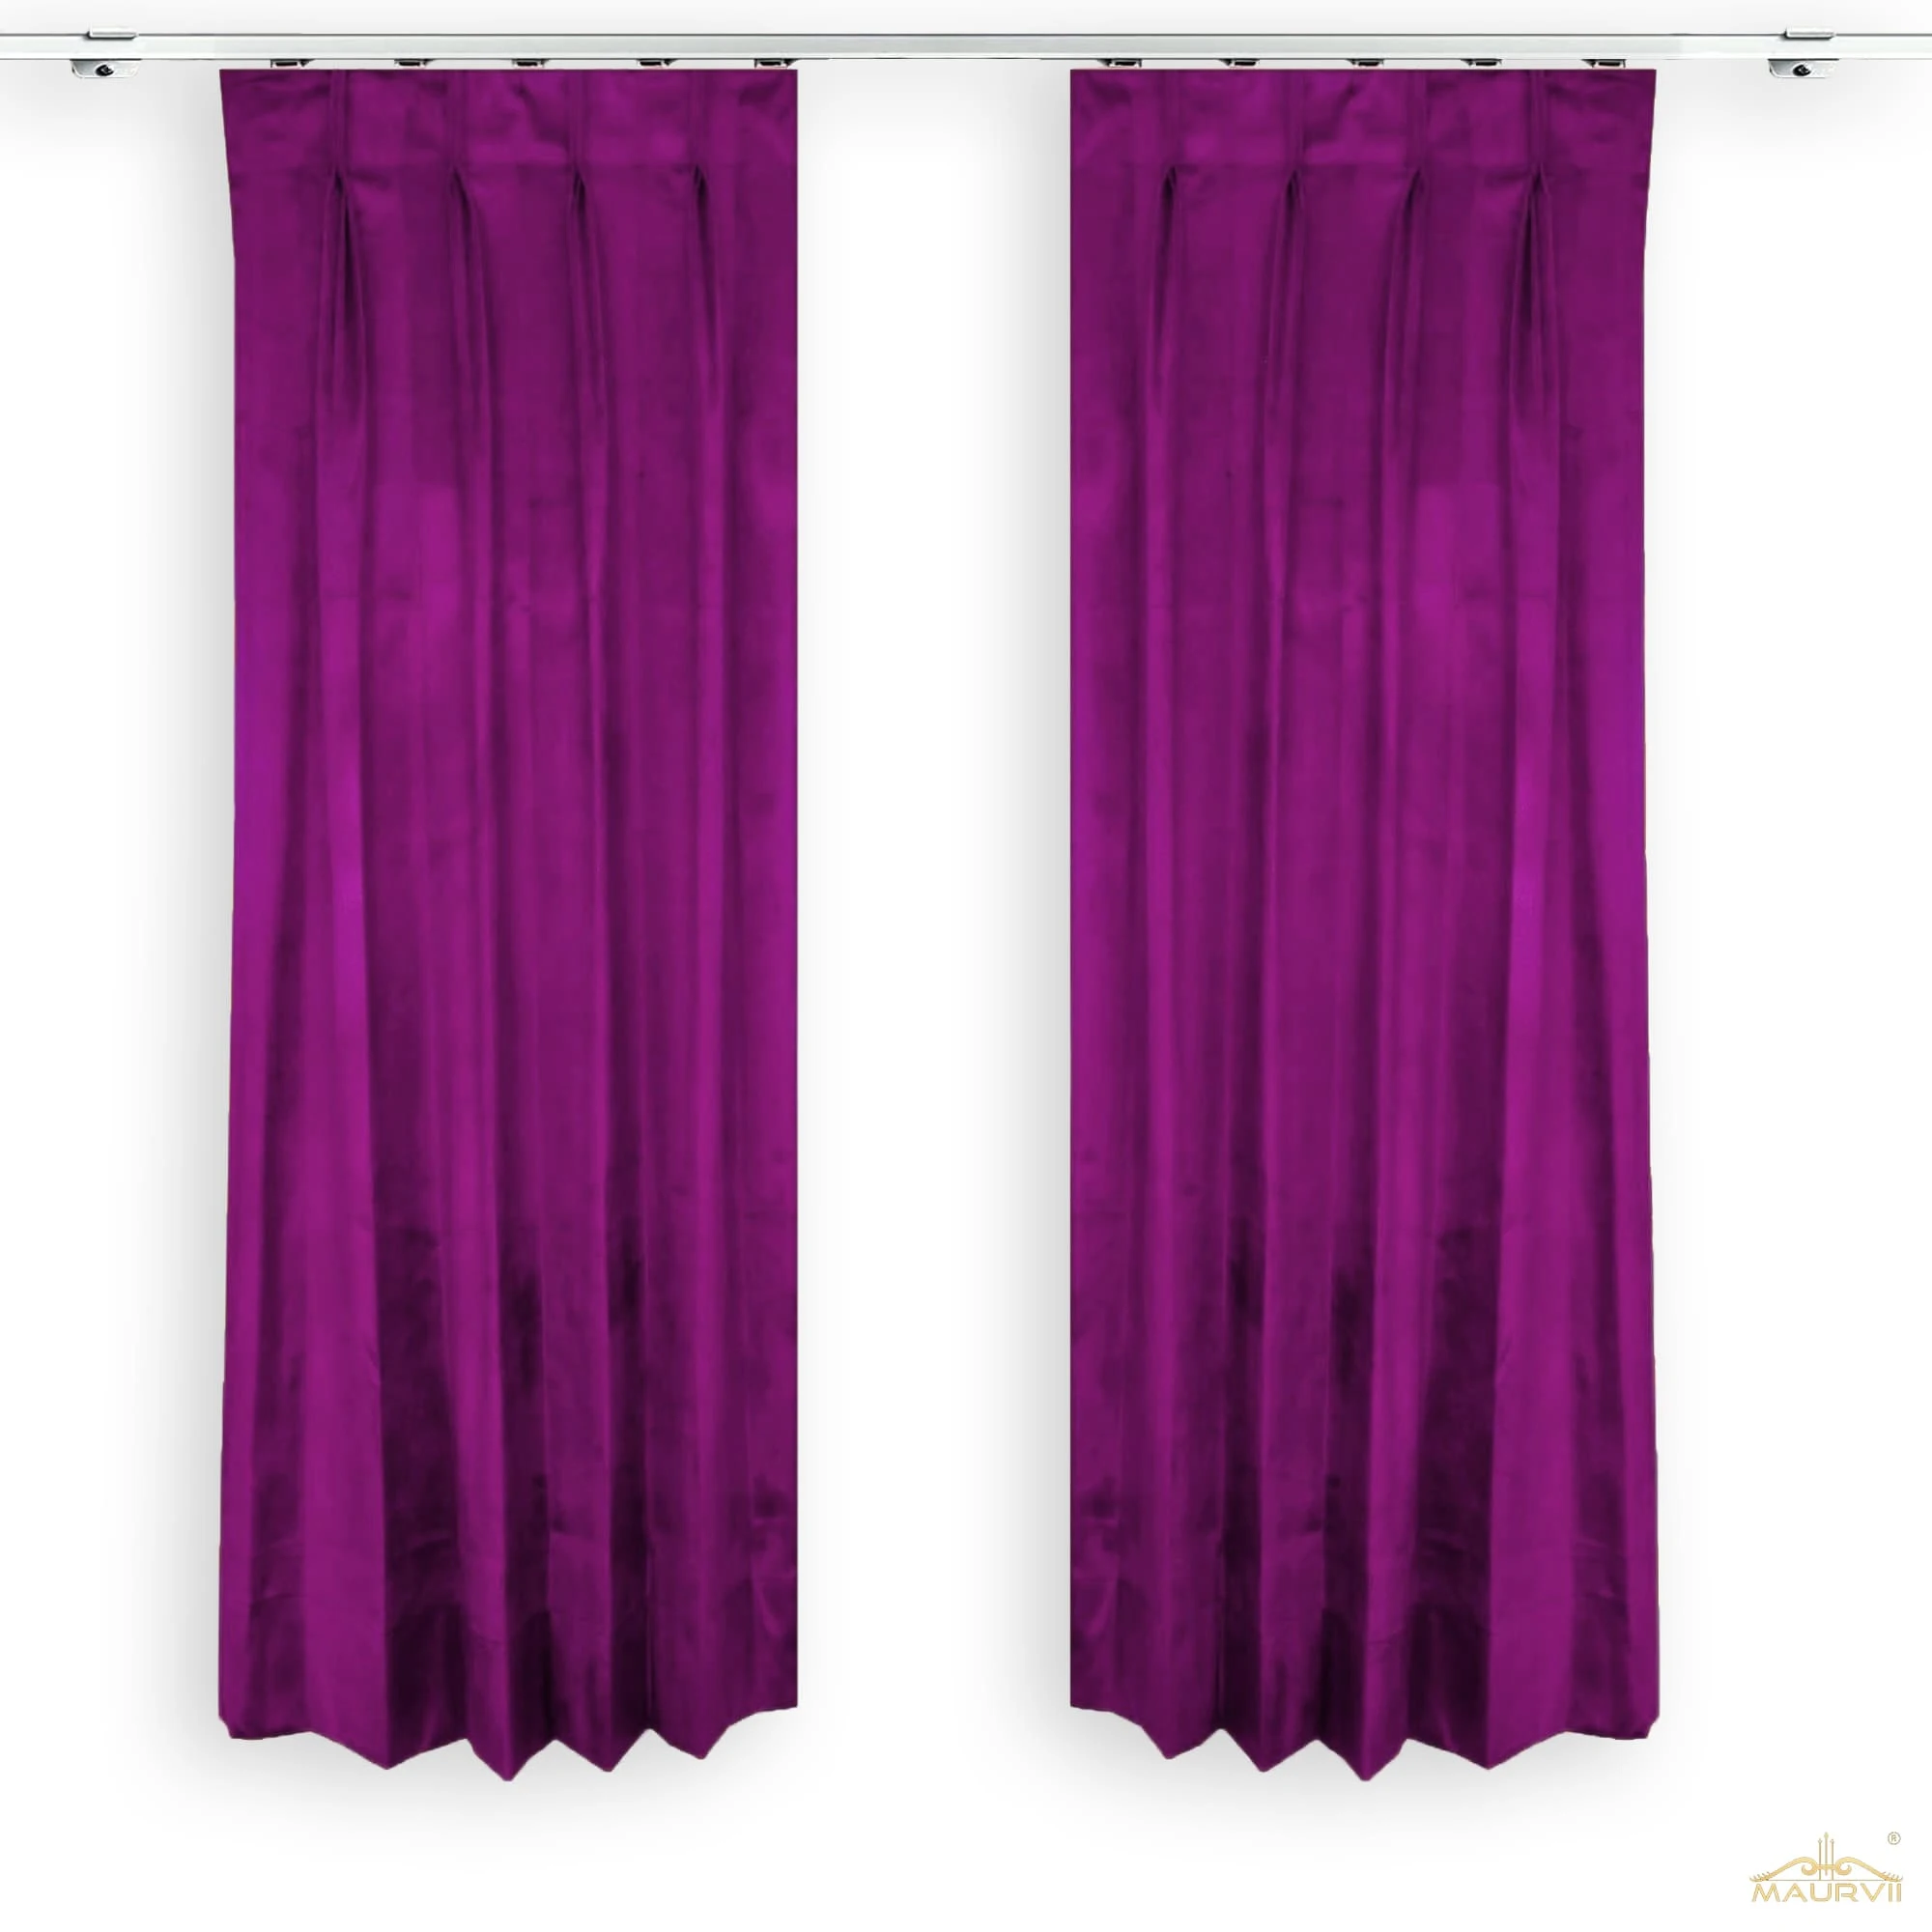 Plum color curtains